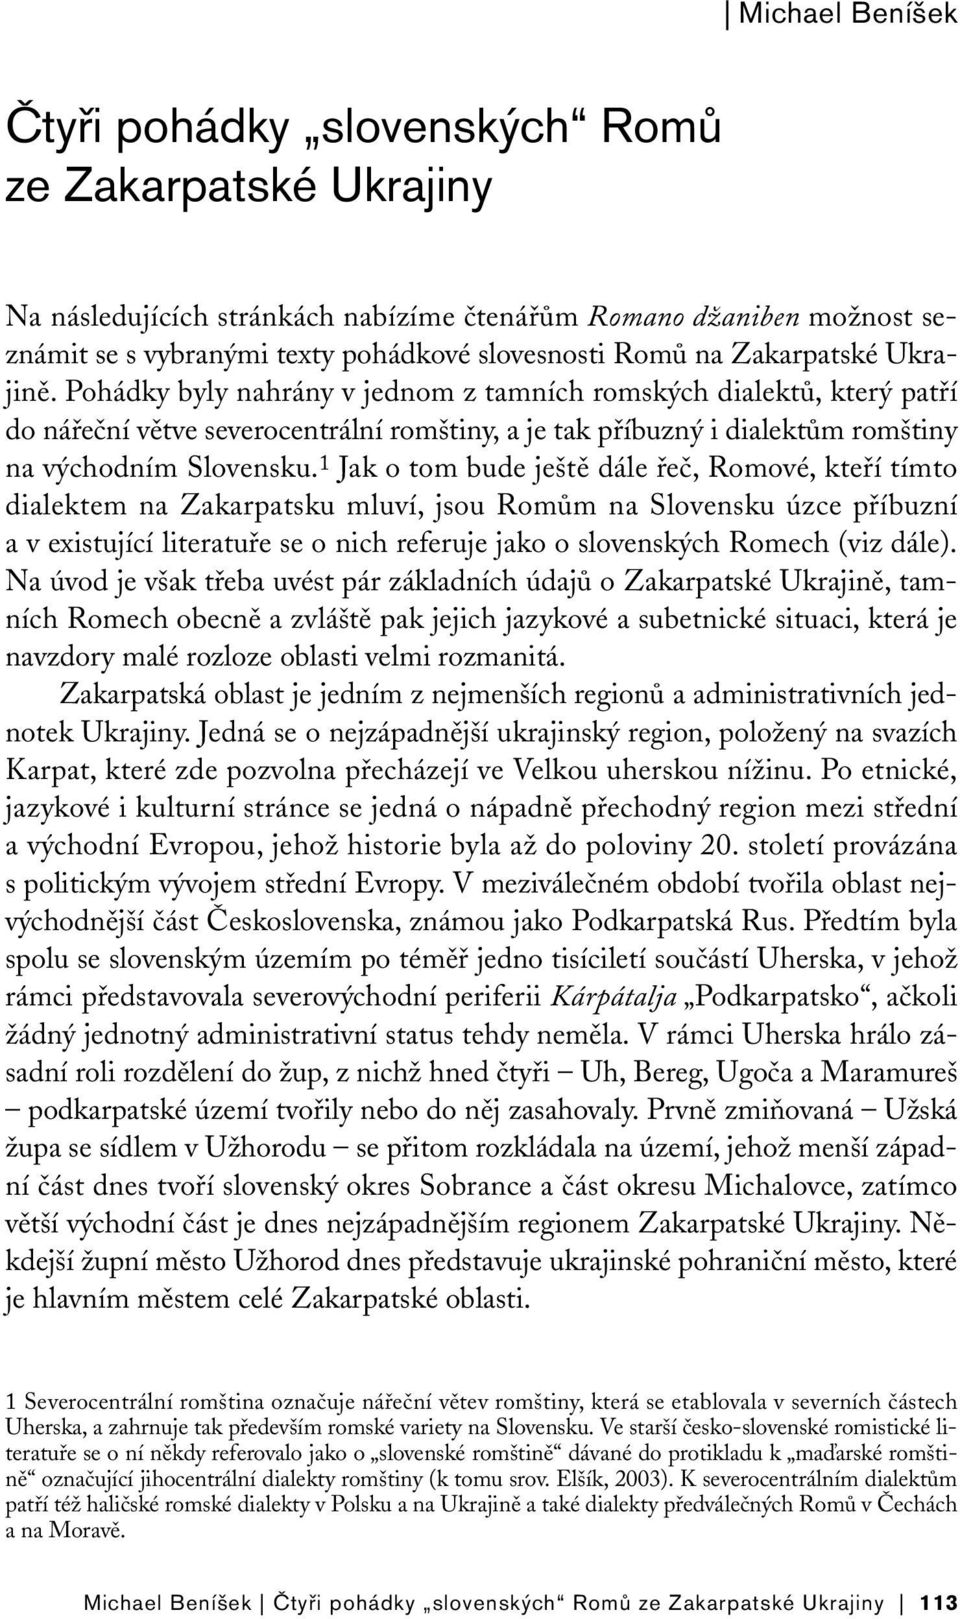 1 Jak o tom bude ještě dále řeč, Romové, kteří tímto dialektem na Zakarpatsku mluví, jsou Romům na Slovensku úzce příbuzní a v existující literatuře se o nich referuje jako o slovenských Romech (viz